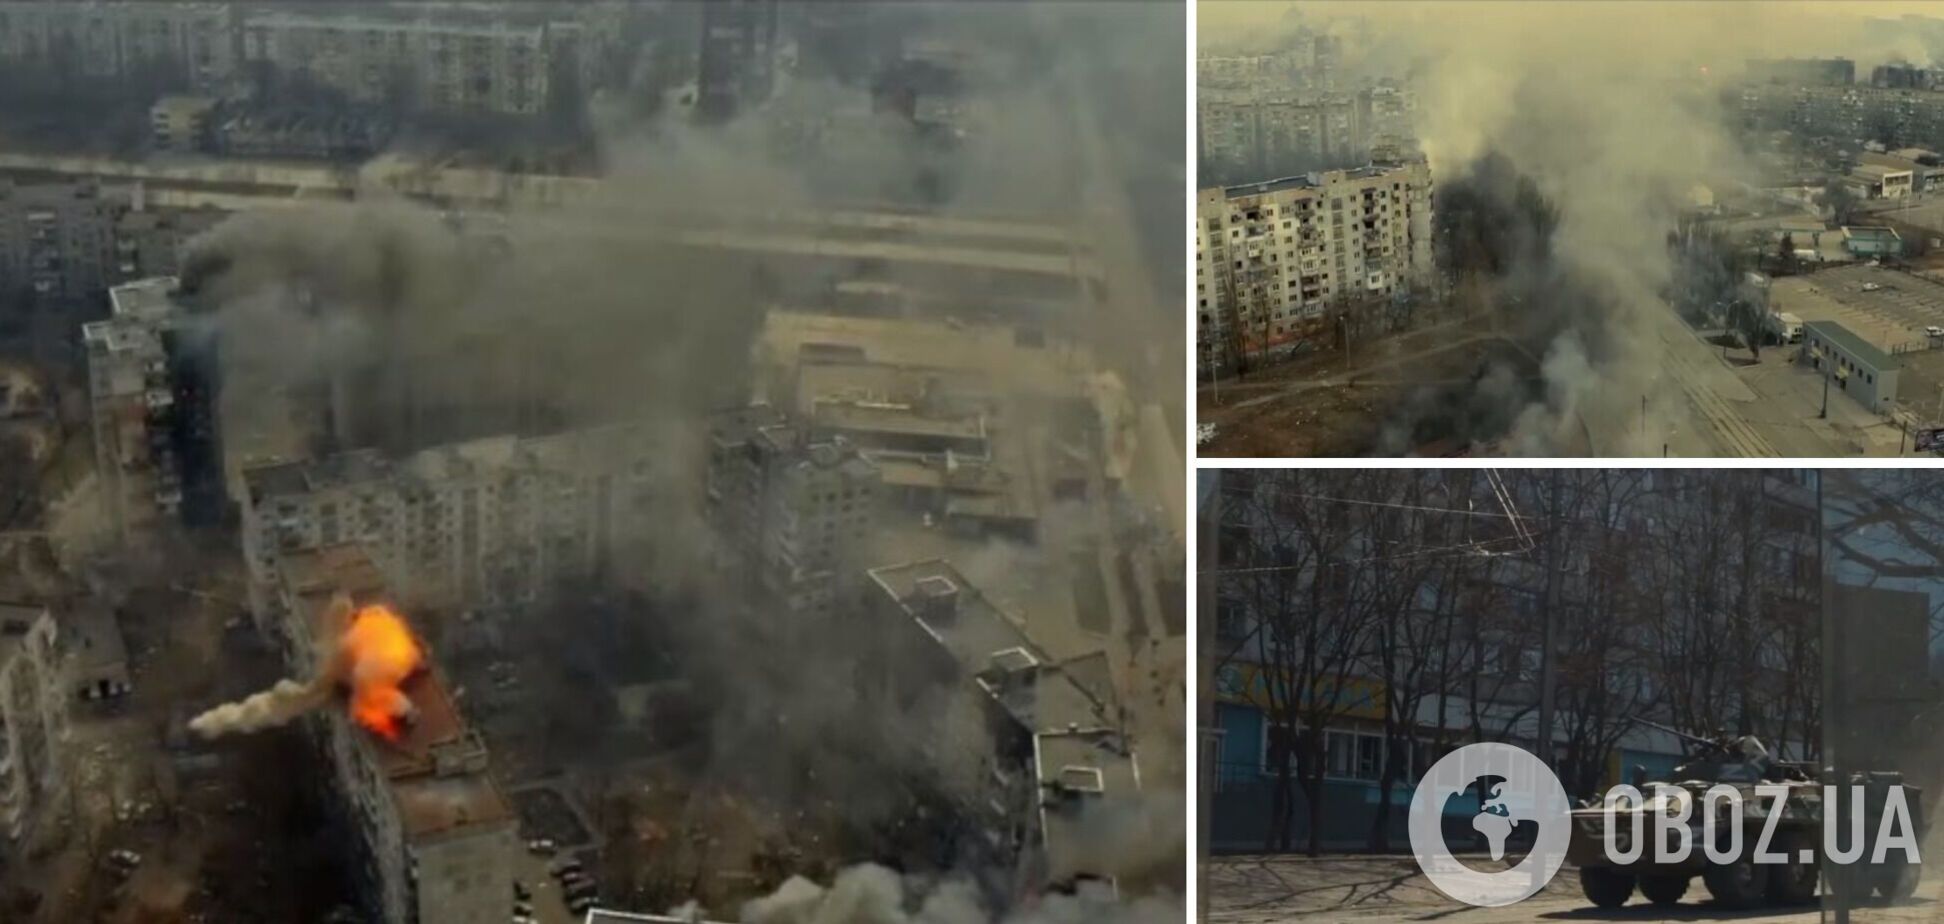 Россияне показали, как расстреливали дома в Маруполе